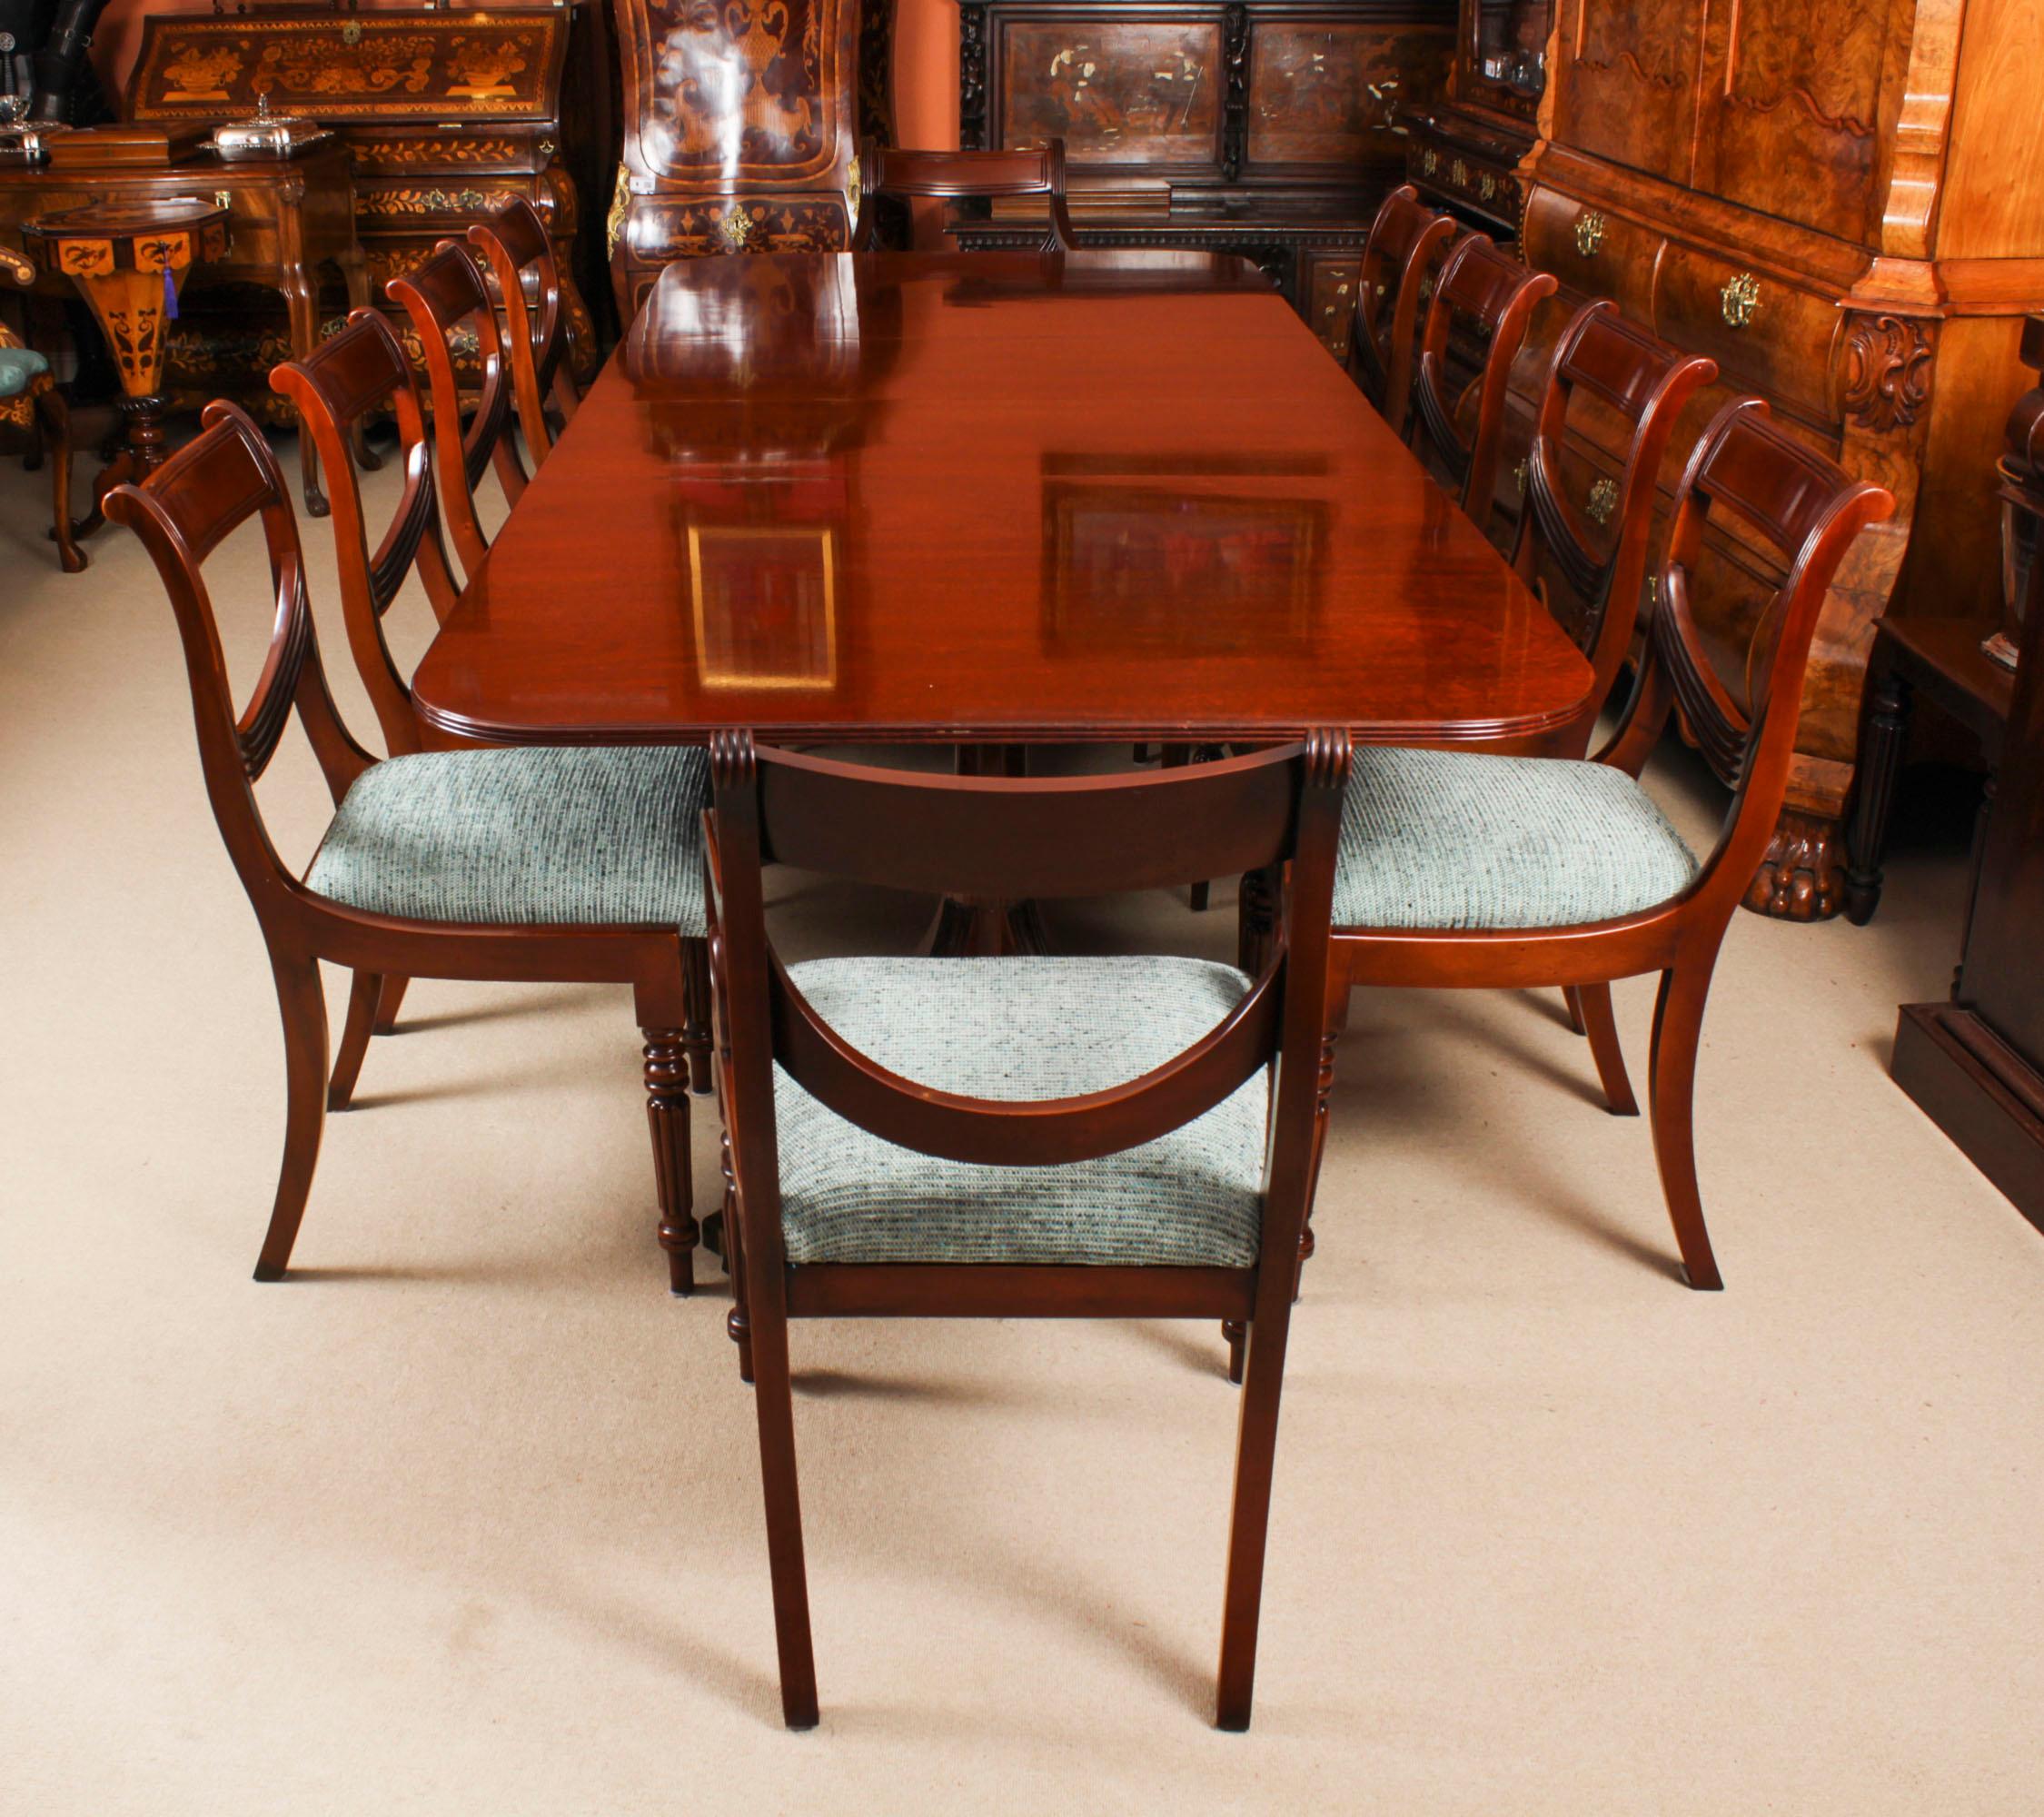 Dies ist  ein fabelhaftes Vintage-Regency-Revival-Esszimmer-Set, bestehend aus einem  Esstisch und einem Satz von zehn Swag Back Esszimmerstühlen,  von dem Meister William Tillman, CIRCA 1980, datiert.

Der Tisch ist aus massivem Mahagoni gefertigt